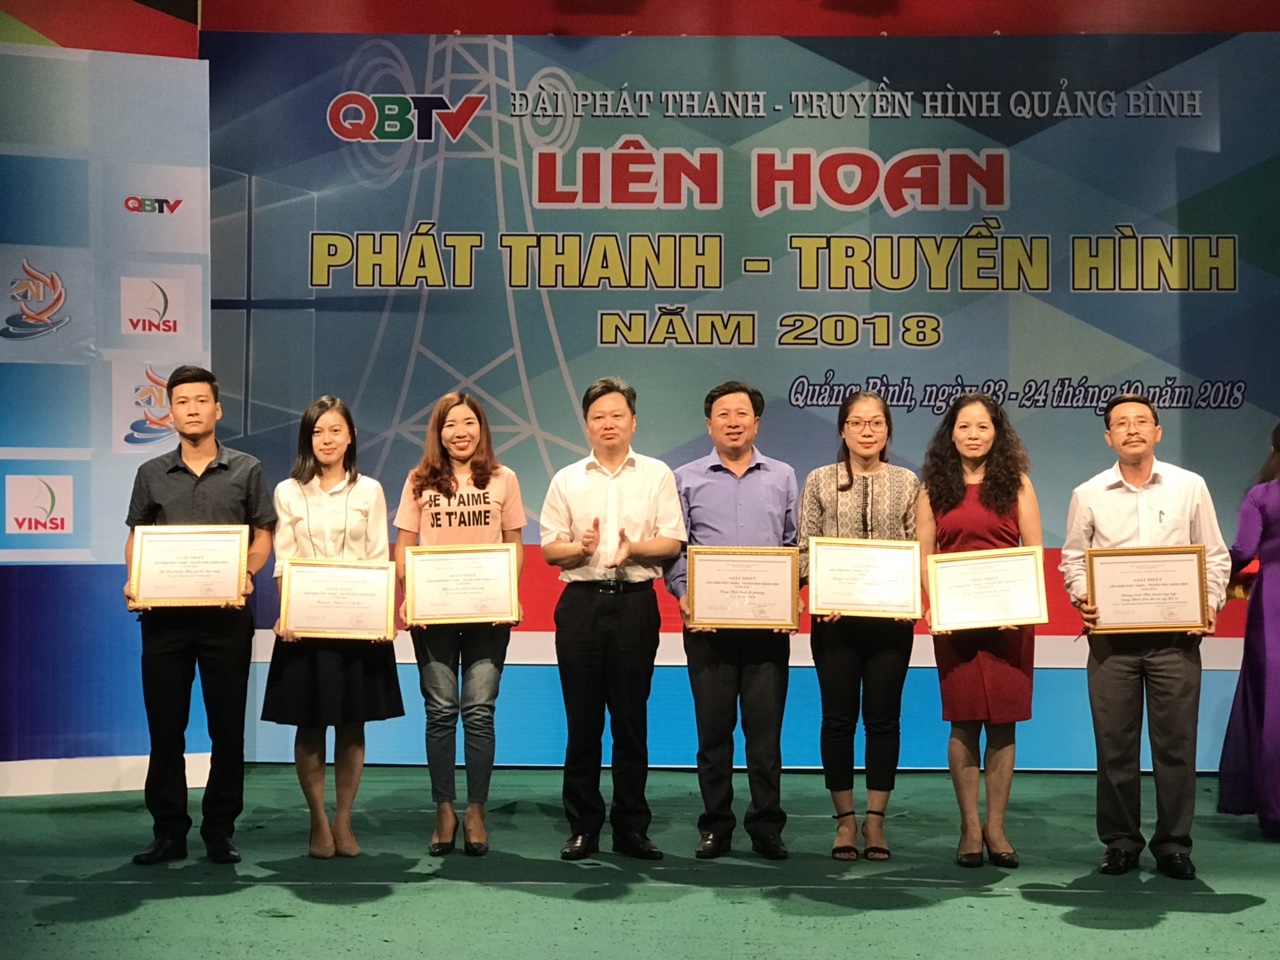 Đồng chí Phó Chủ tịch UBND tỉnh Nguyễn Tiến Hoàng trao giải nhất cho các tác giả, nhóm tác giả đoạt giải nhất.